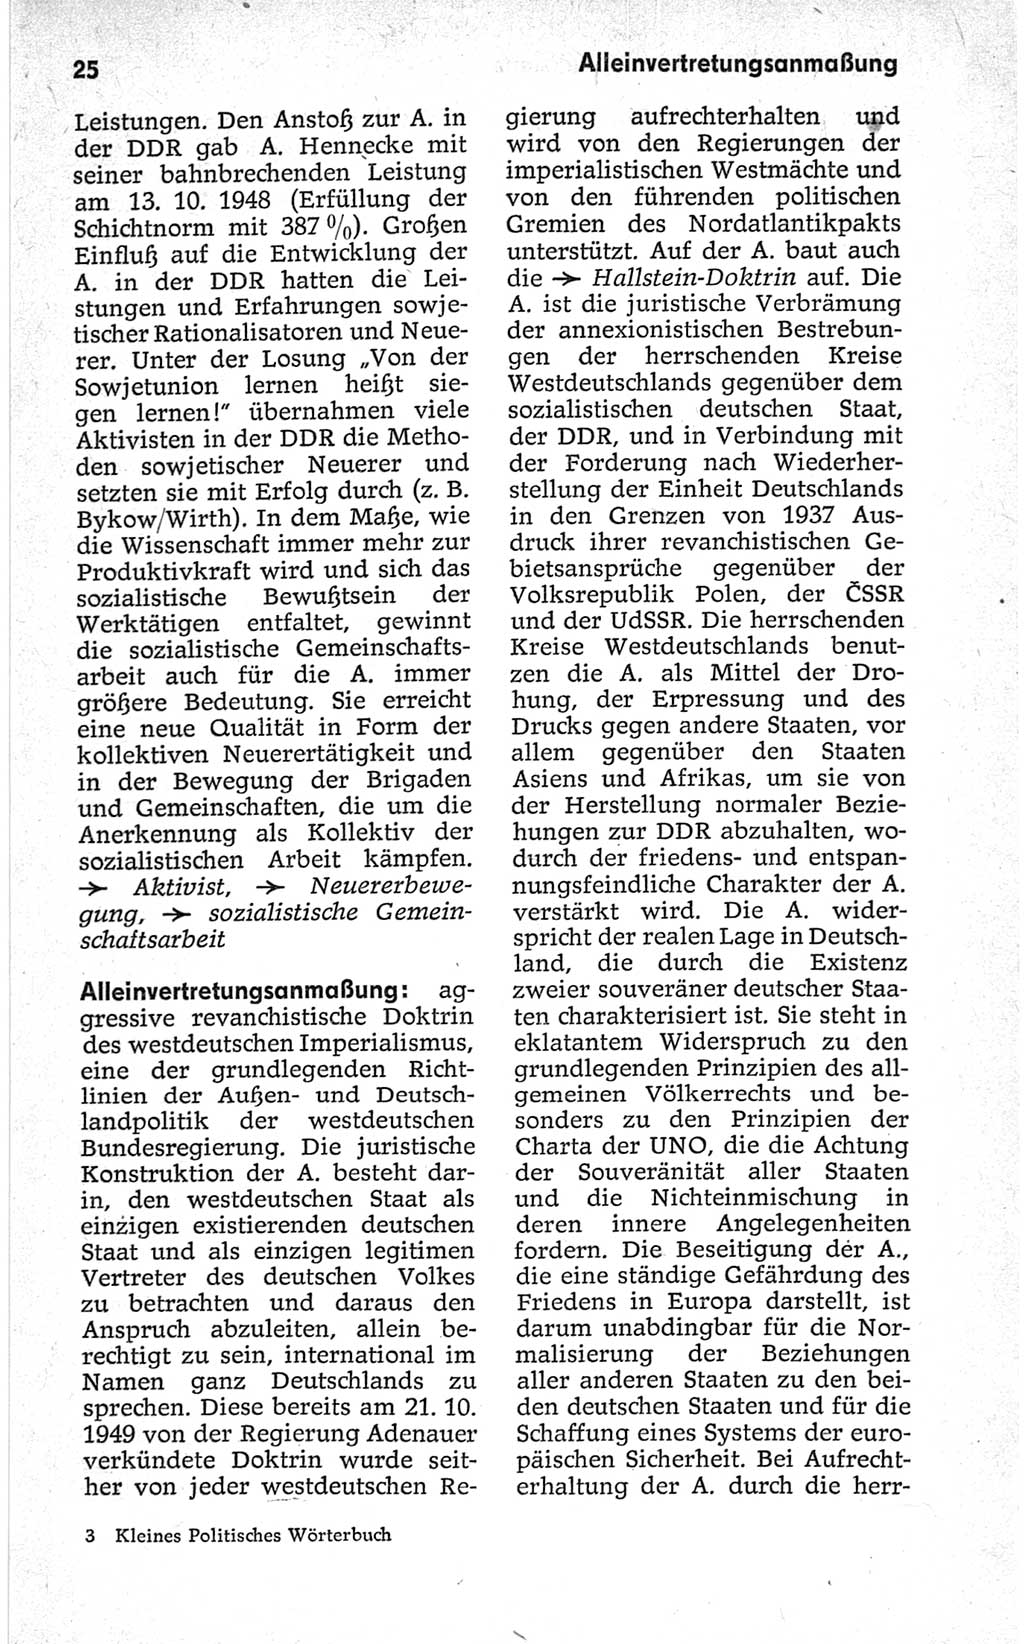 Kleines politisches Wörterbuch [Deutsche Demokratische Republik (DDR)] 1967, Seite 25 (Kl. pol. Wb. DDR 1967, S. 25)